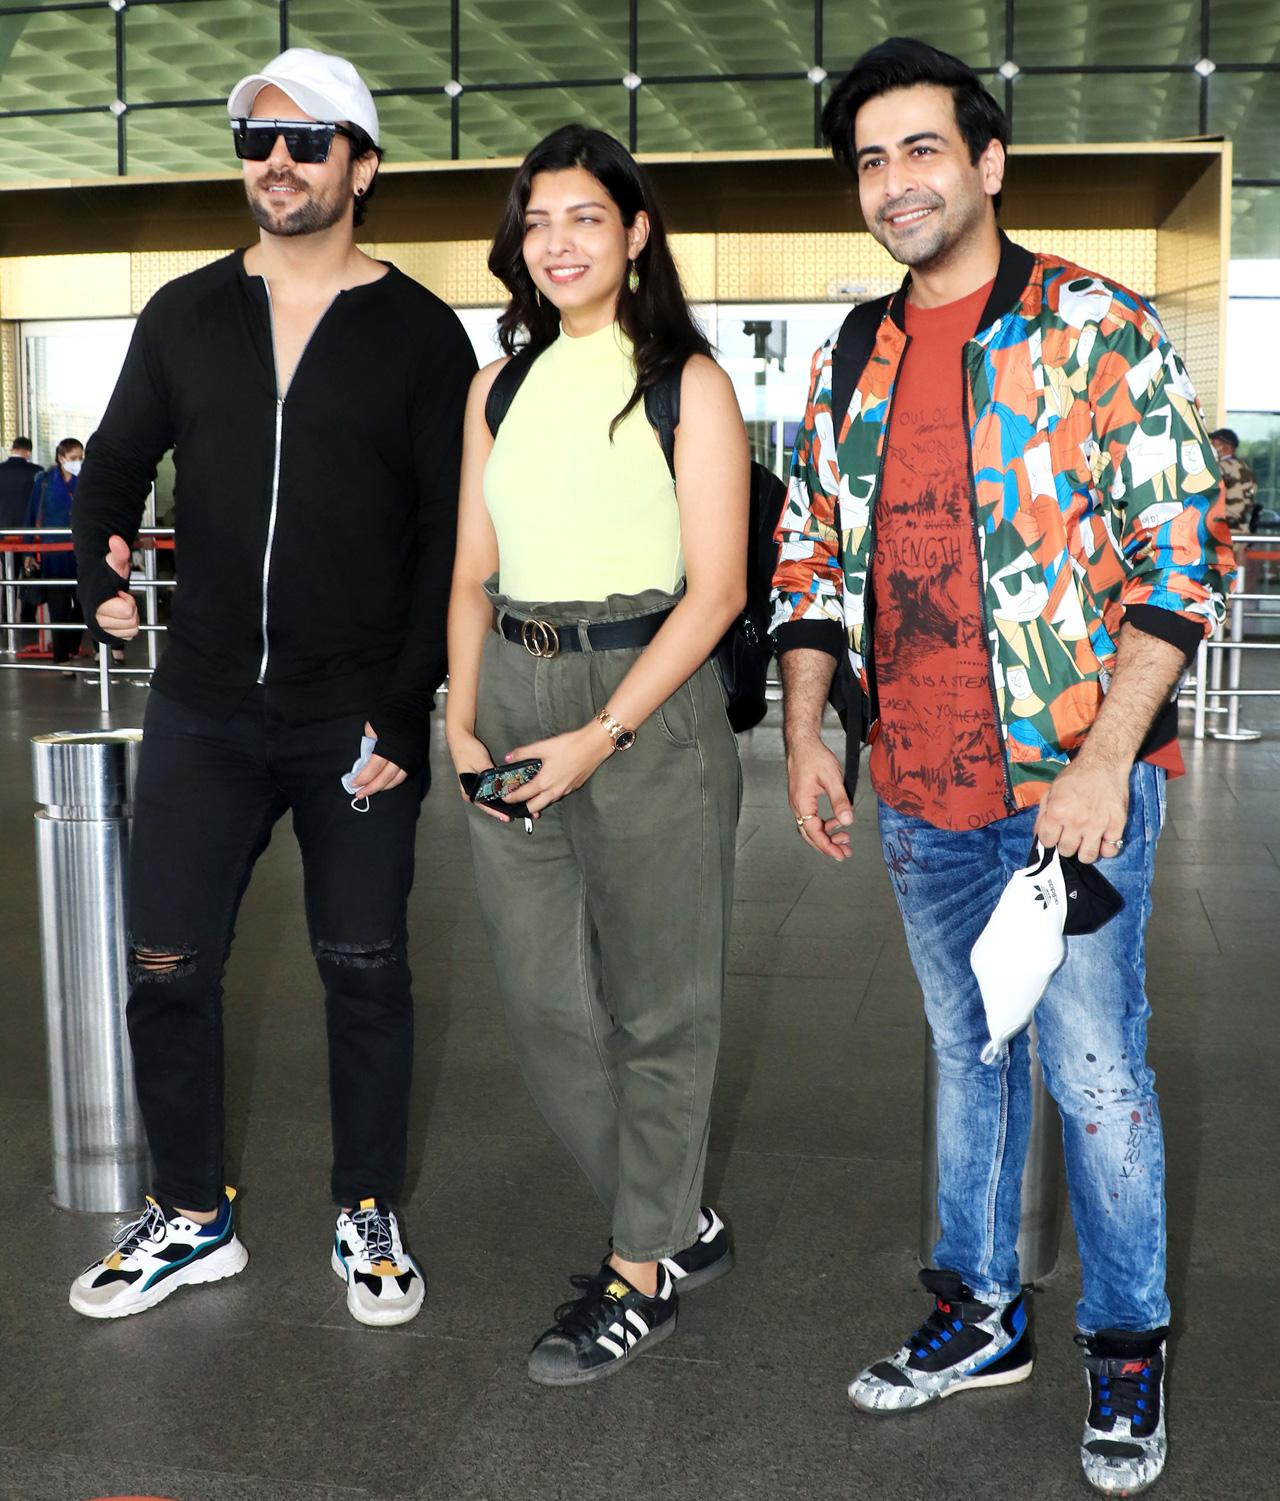 Telly actors Riya Deepsi, Dishank Arora and Sanjay Gagnani were also spotted at Mumbai airport.